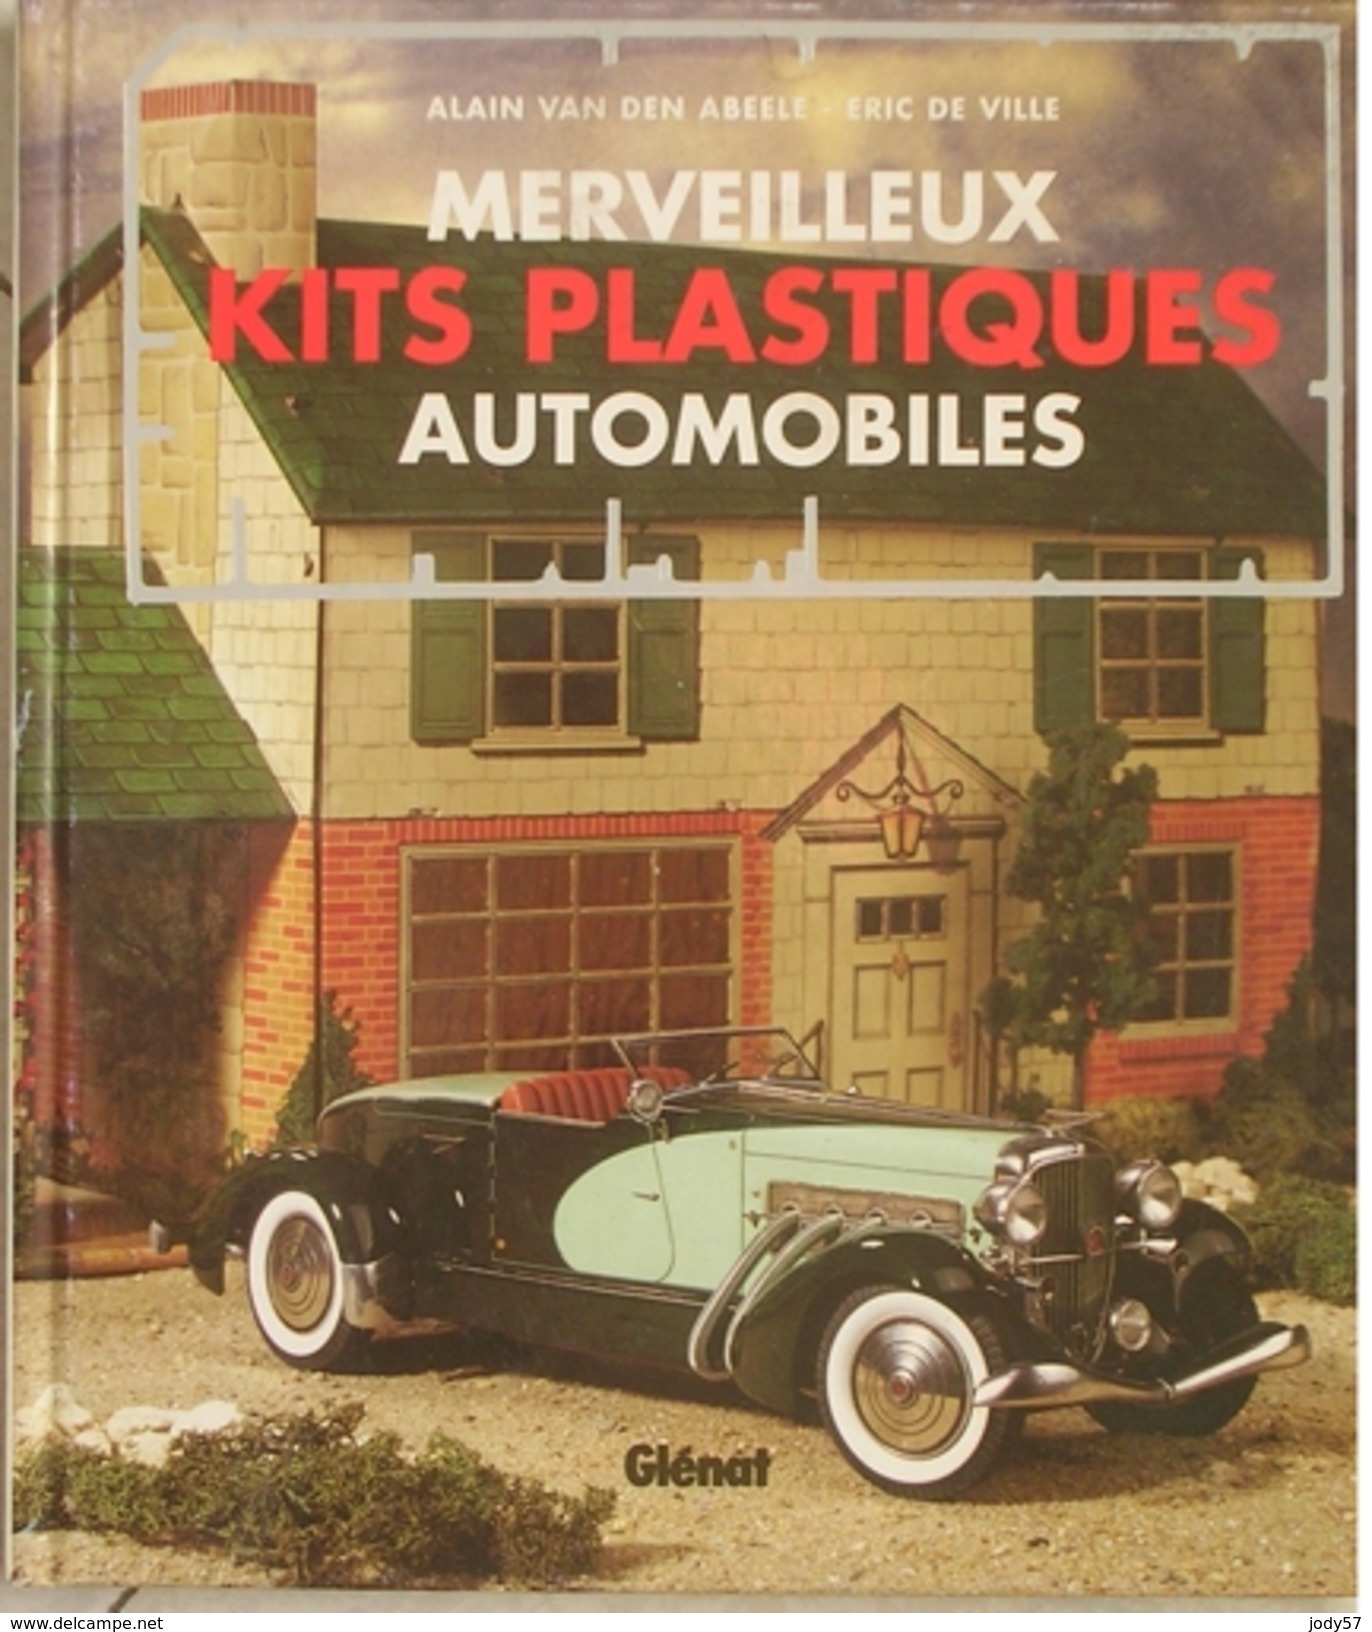 MERVEILLEUX KITS PLASTIQUES AUTOMOBILES - VAN DEN ABEELE - DE VILLE - GLENAT - 1994 - Modélisme